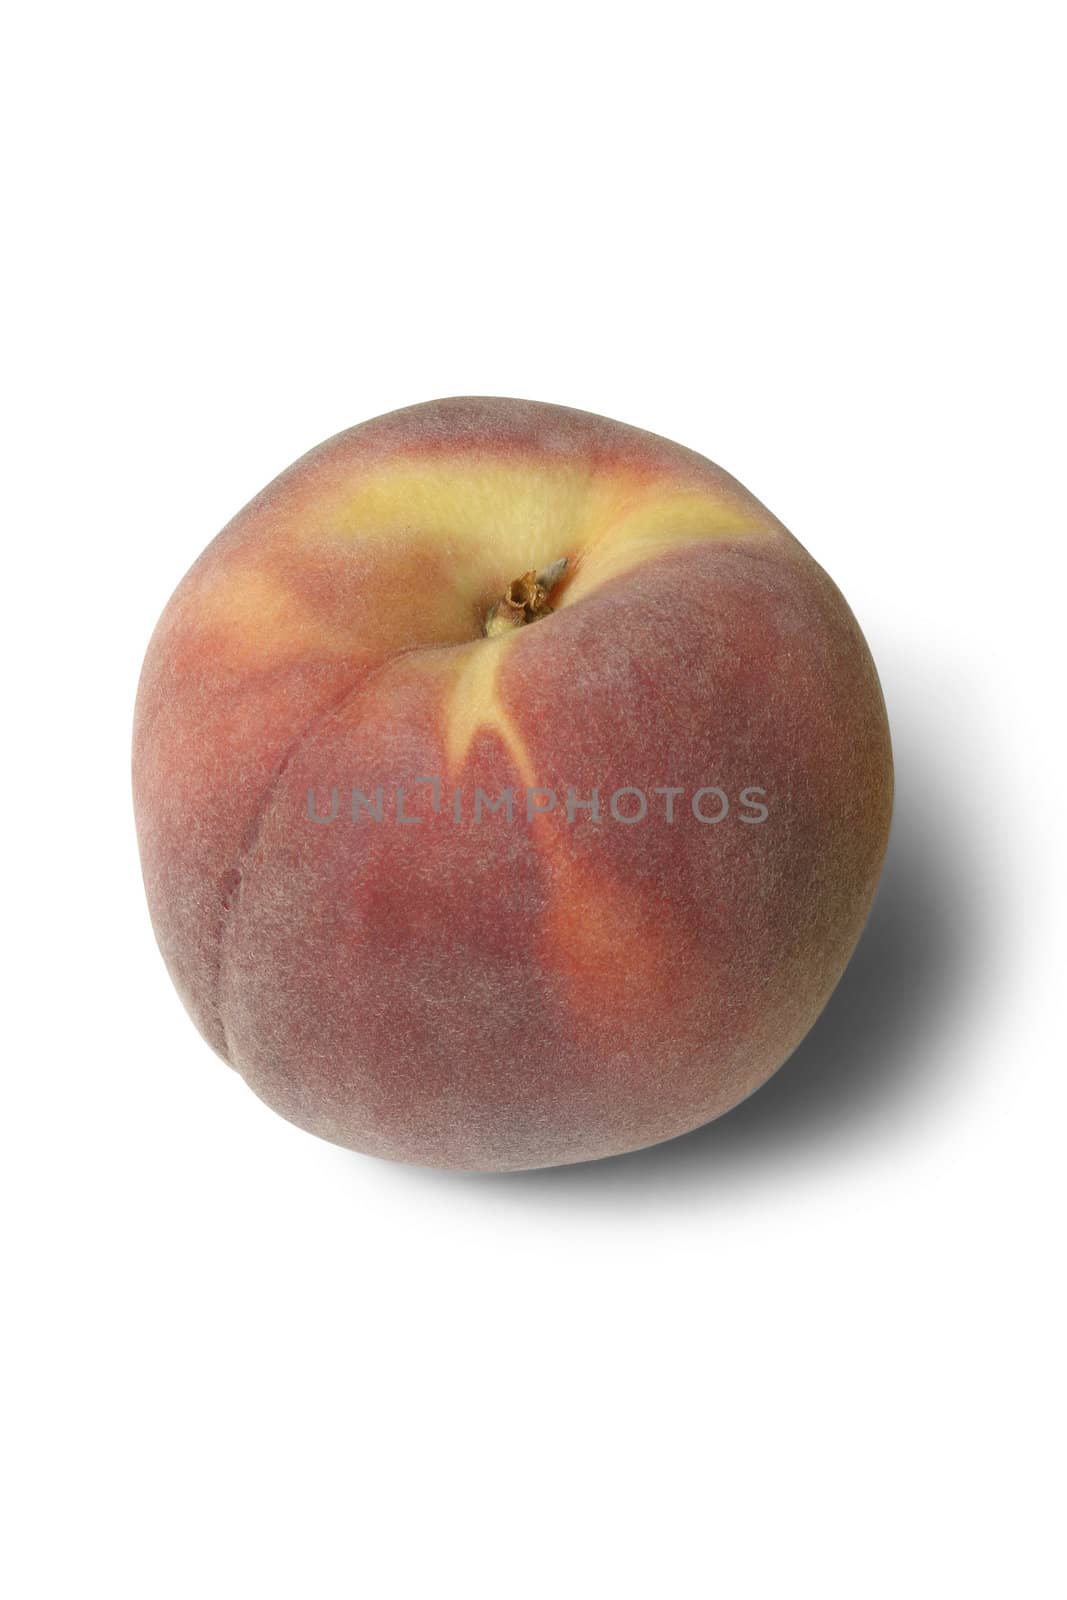 Peach by Baltus